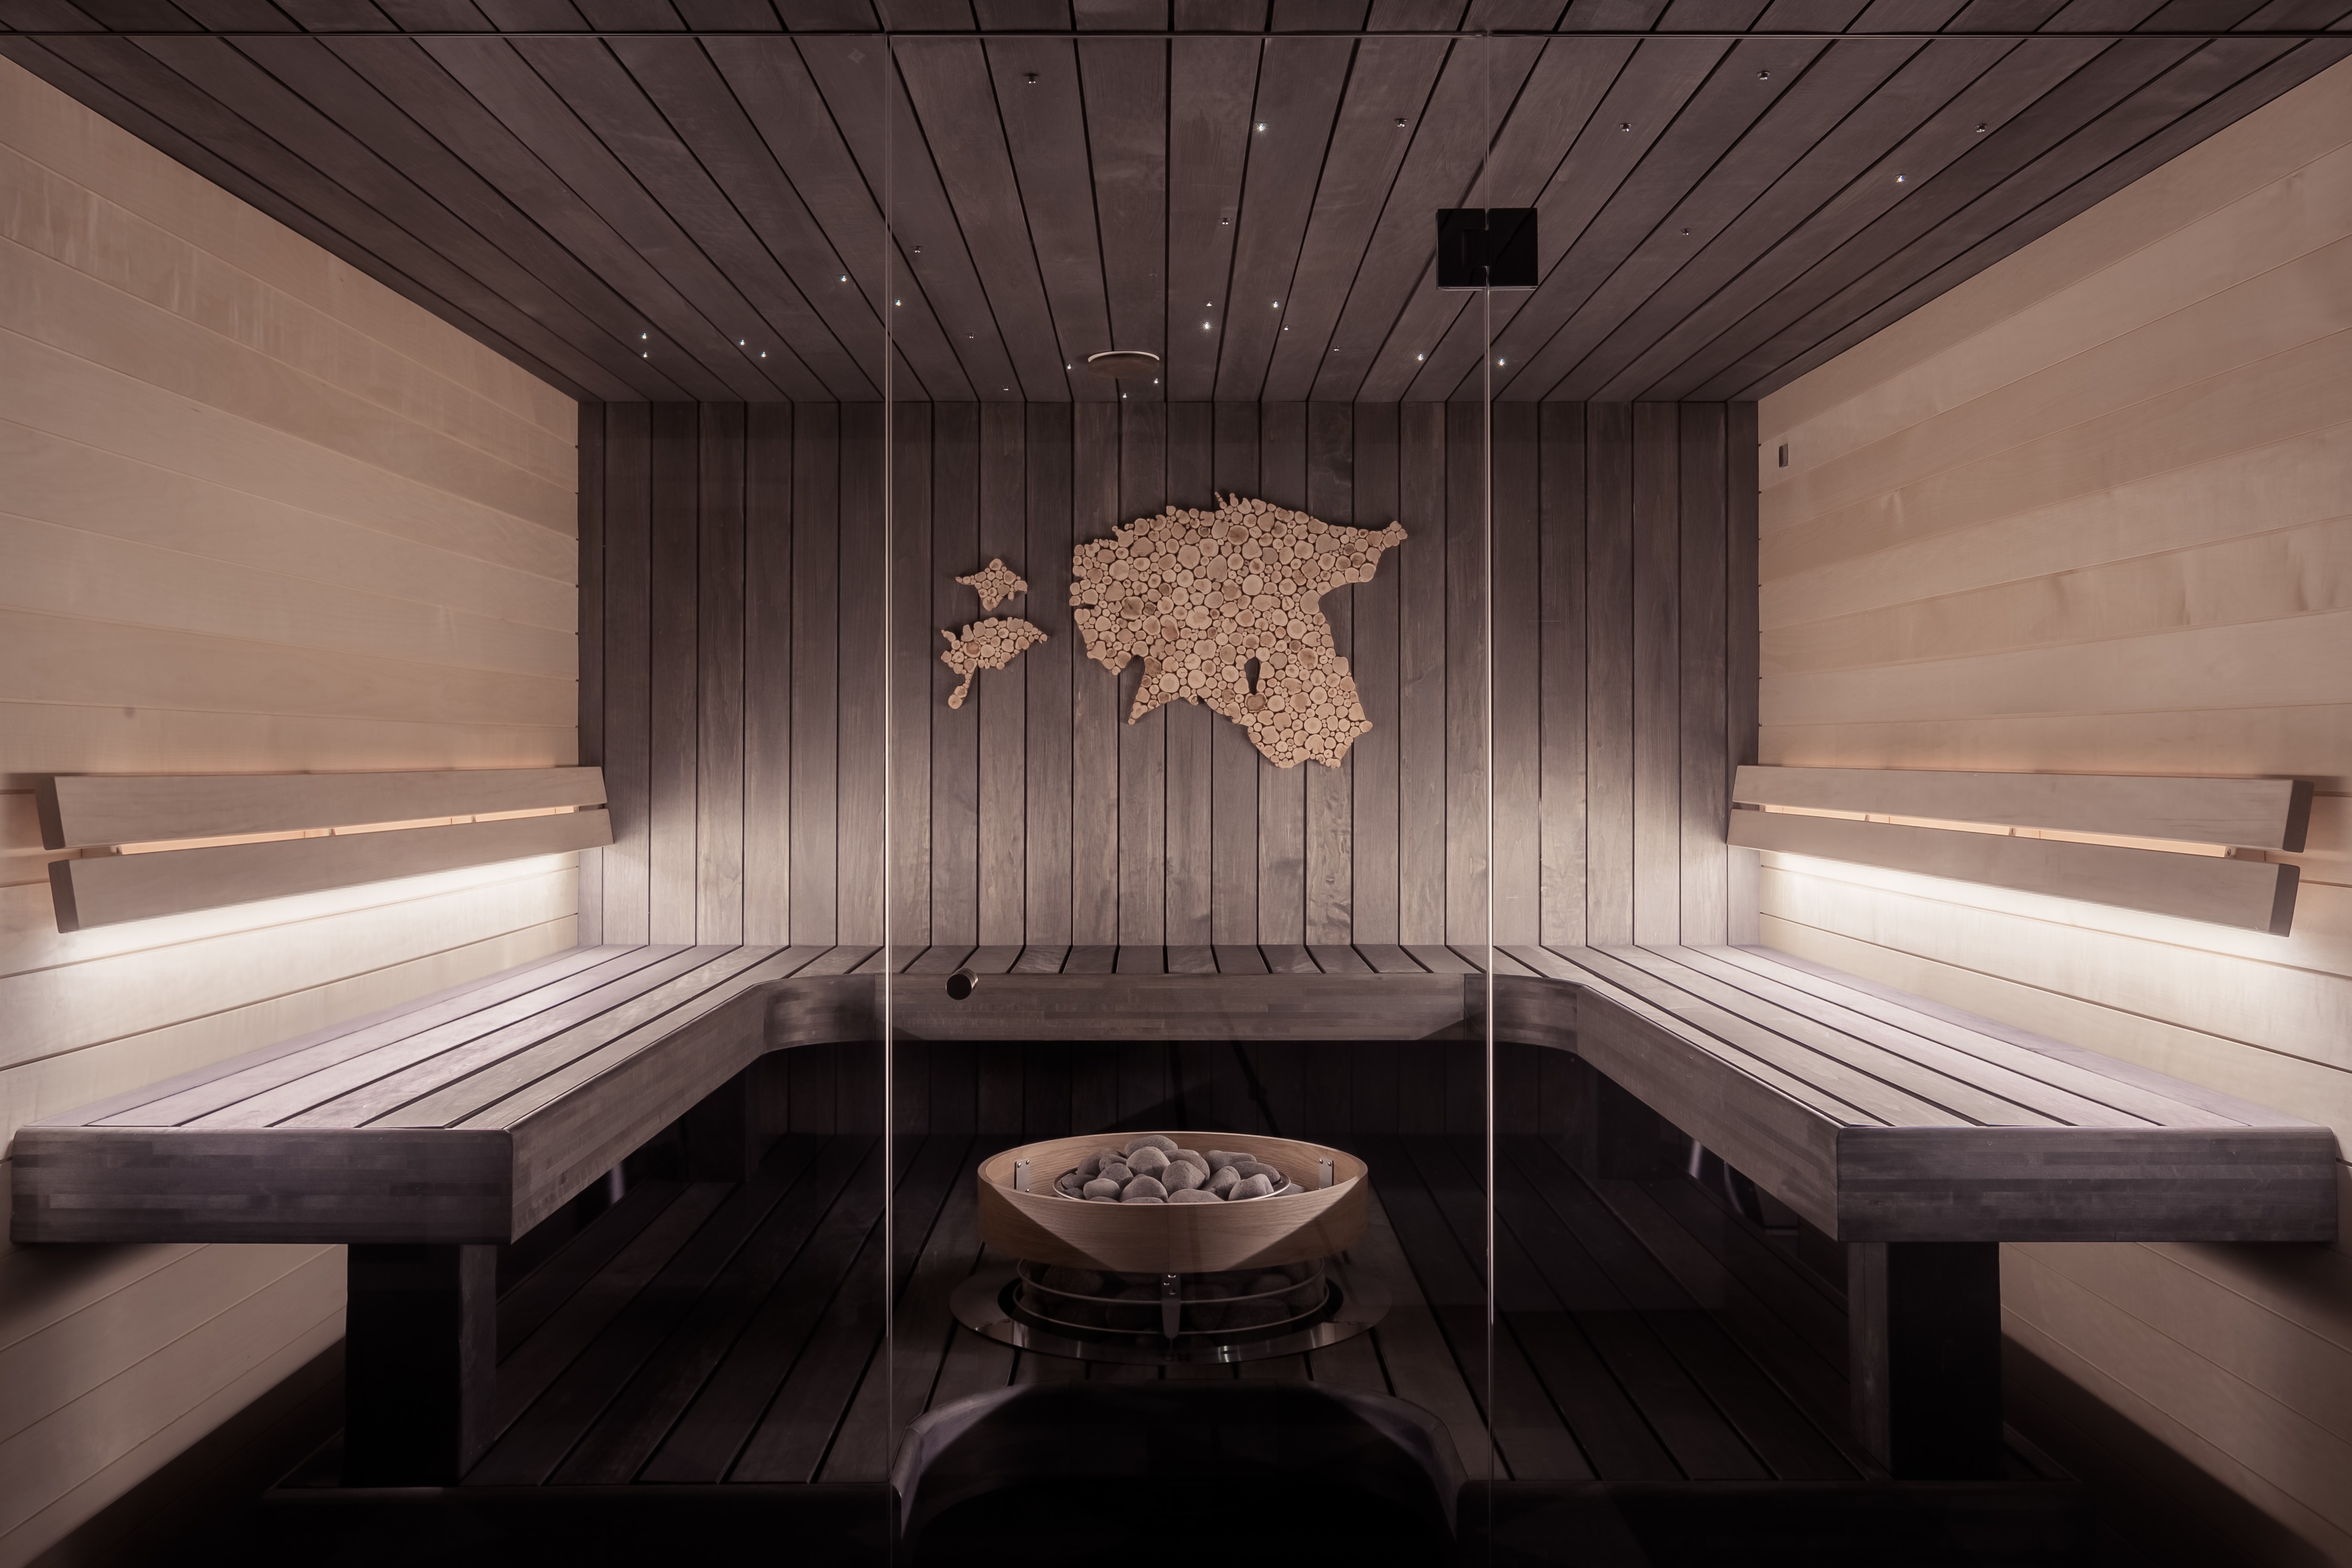 Tiež do sauny môžete zaobstarať štýlové doplnky v drevenom alebo kamennom prevedení